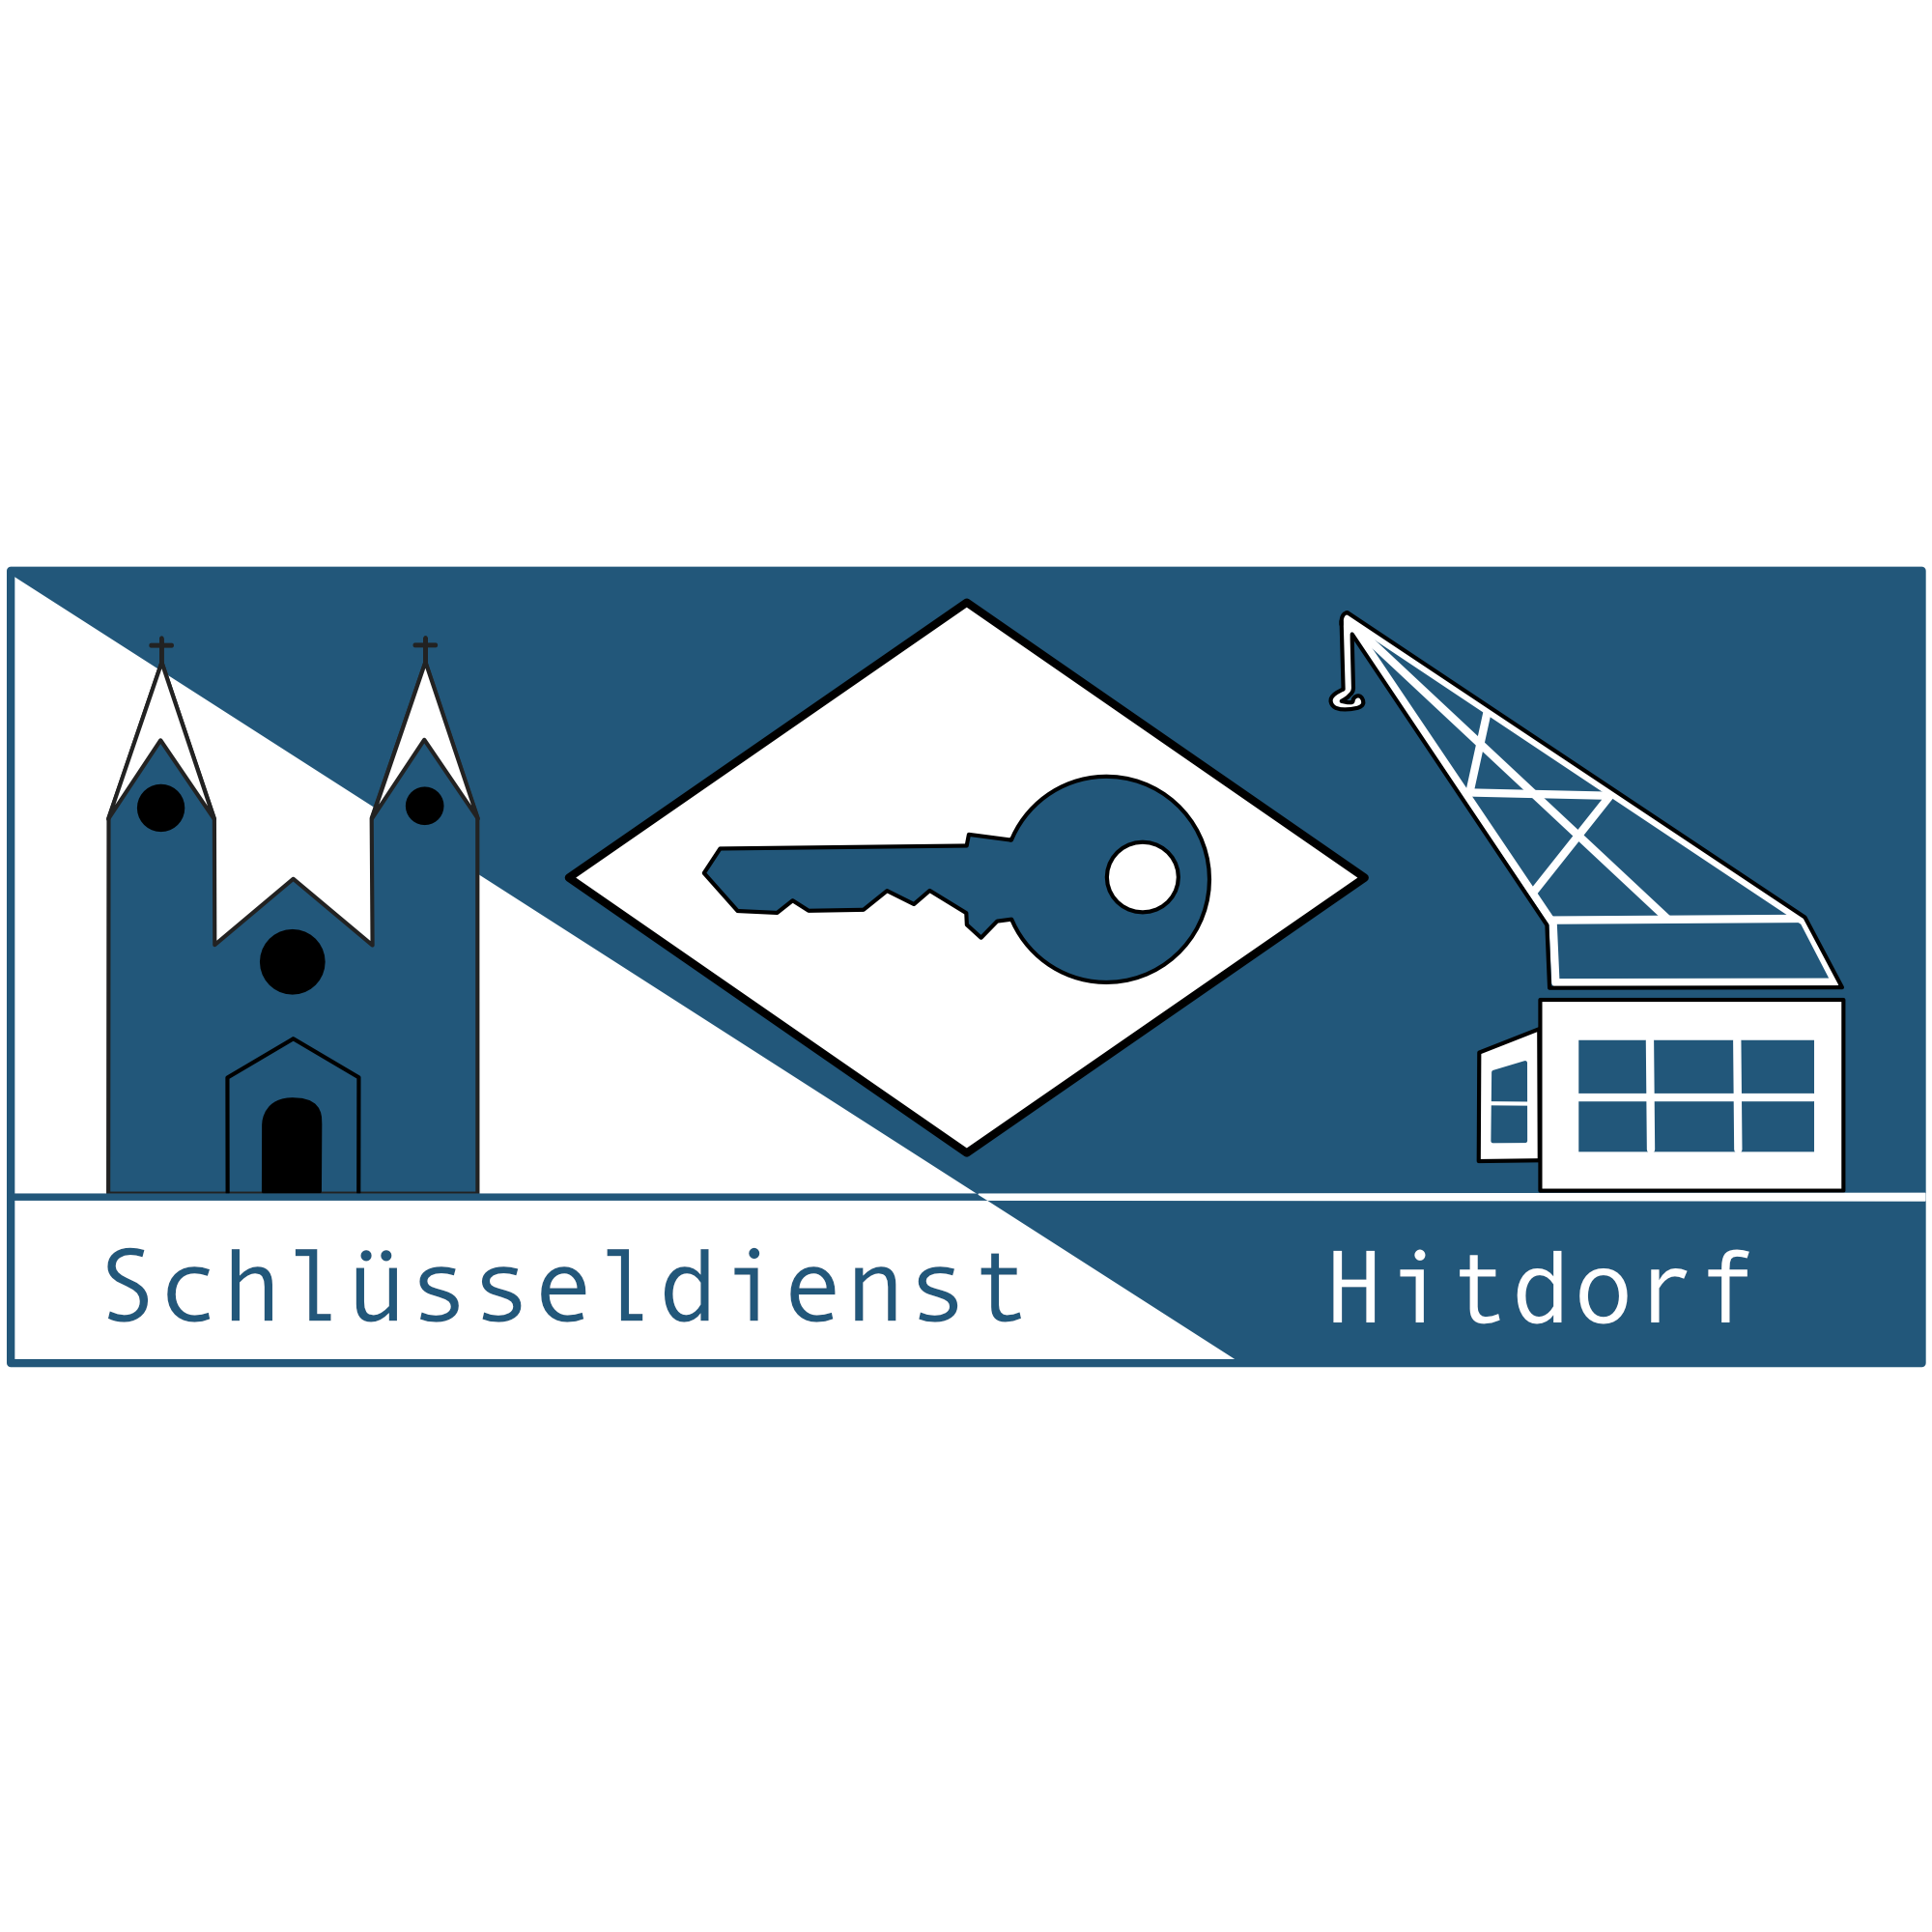 Schlüsseldienst-Hitdorf in Leverkusen - Logo